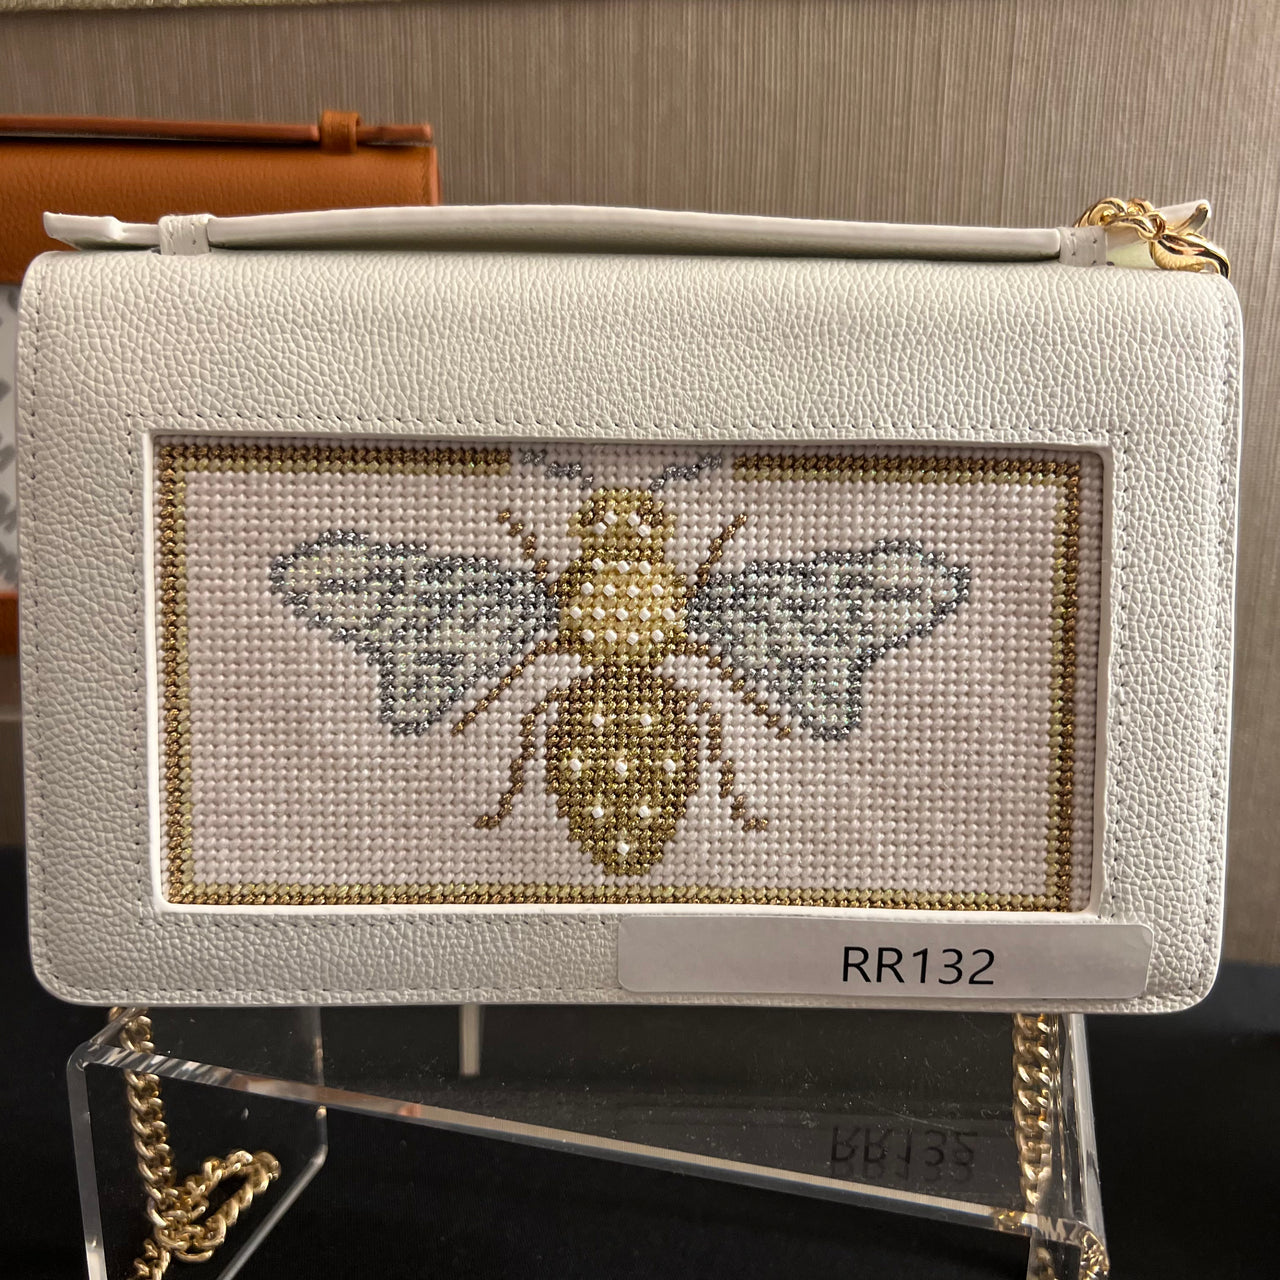 RR132 Glitzy Bee